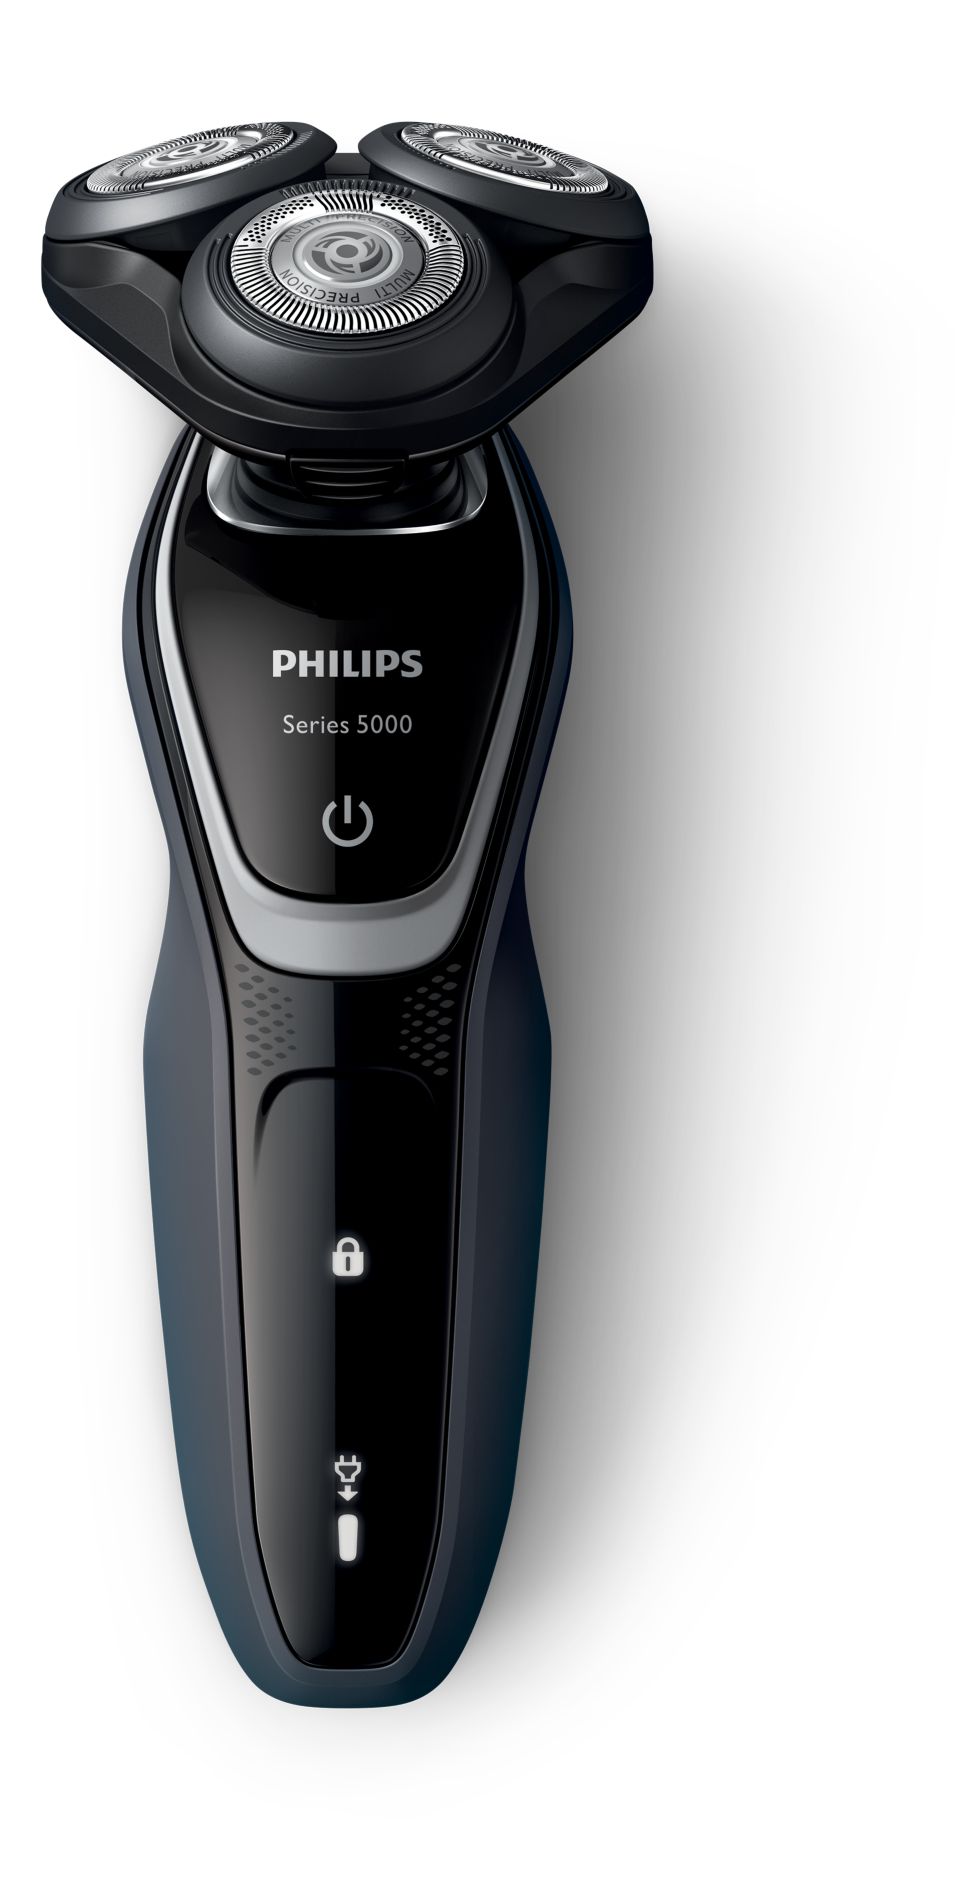 【新品・未開封品】PHILIPS　S5212/12 電気シェーバー　フィリップス